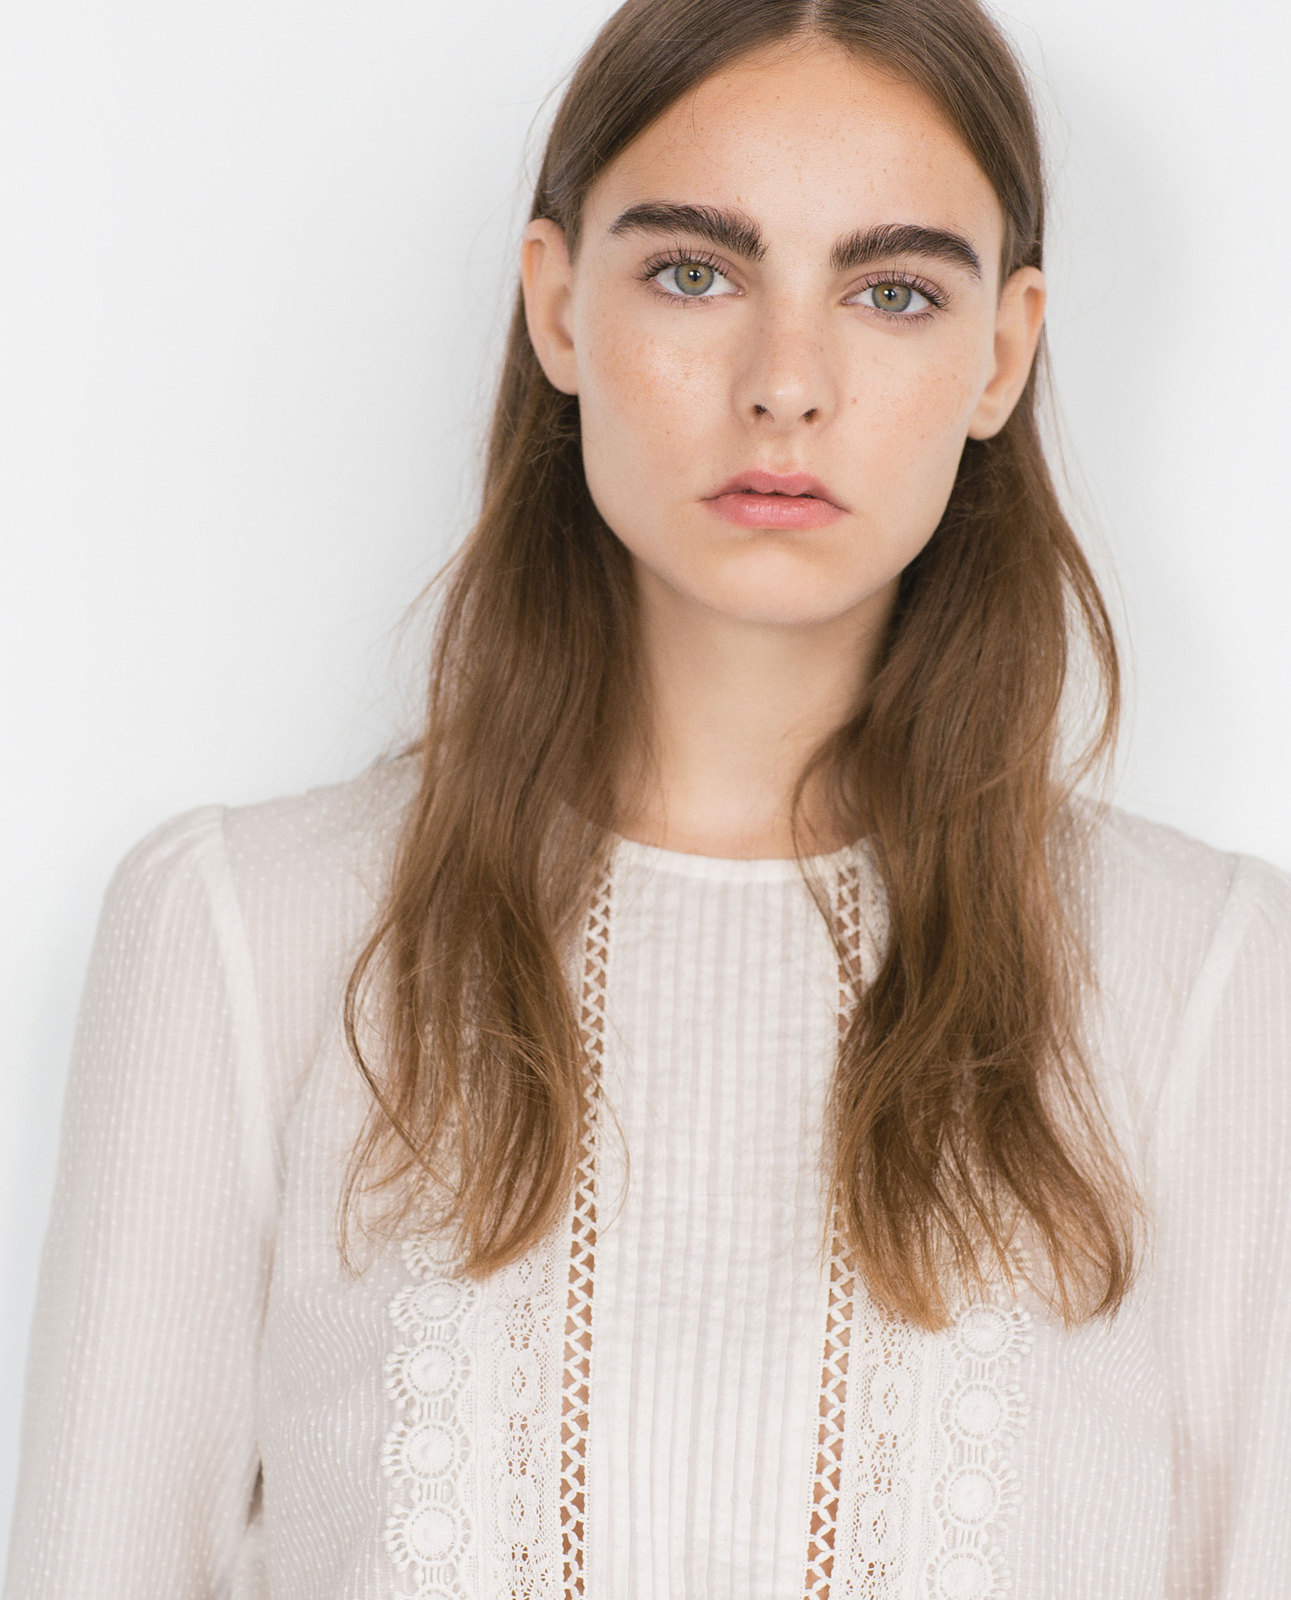 Zara csipke rátétes plumetis blúz 2015.10.15 fotója